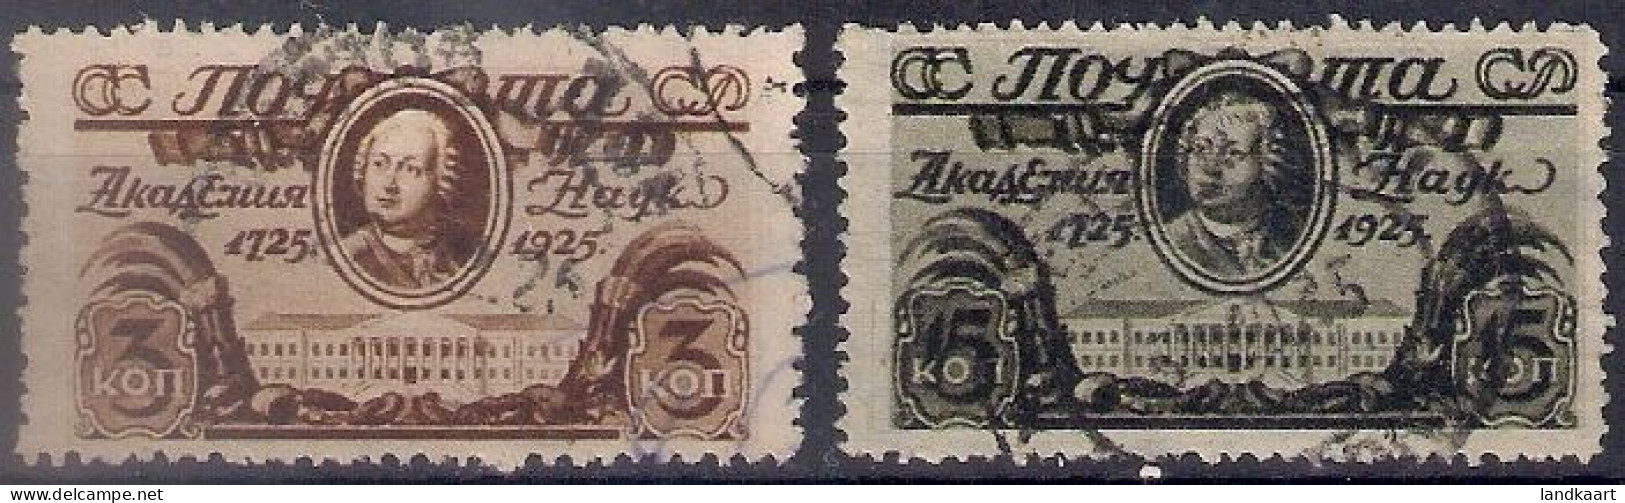 Russia 1925, Michel Nr 298-99, Used - Usati